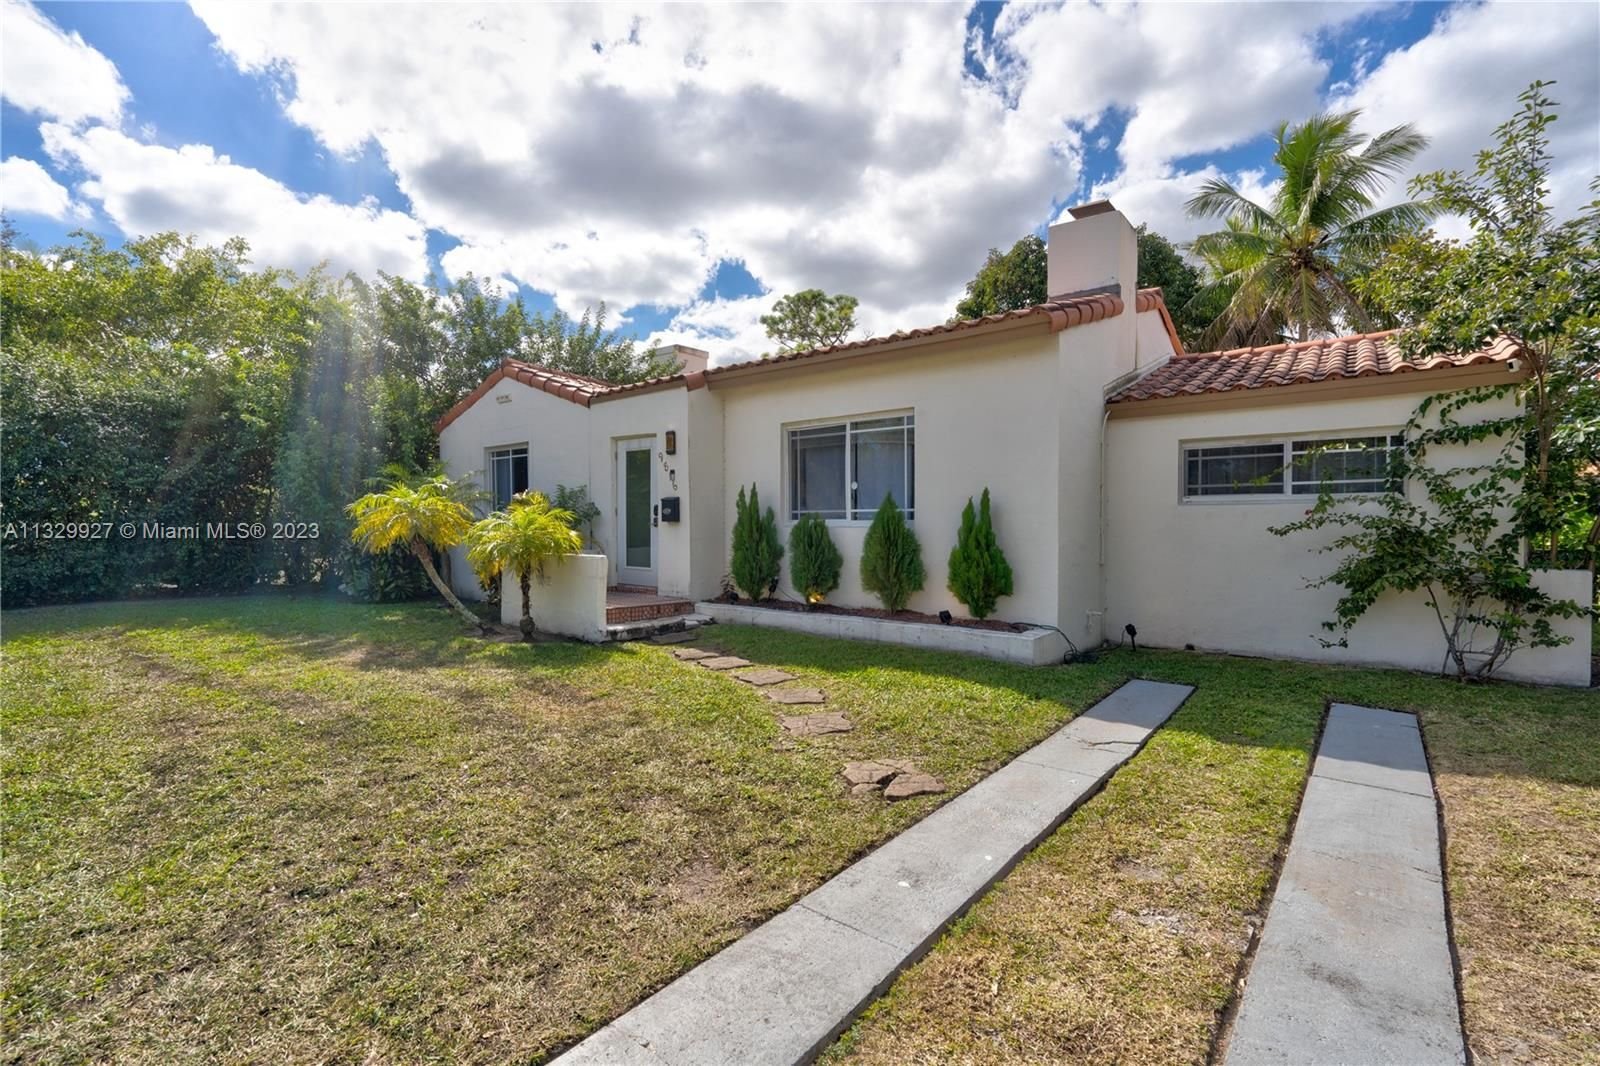 Real estate property located at 9816 Miami Ave, Miami-Dade County, Miami Shores, FL